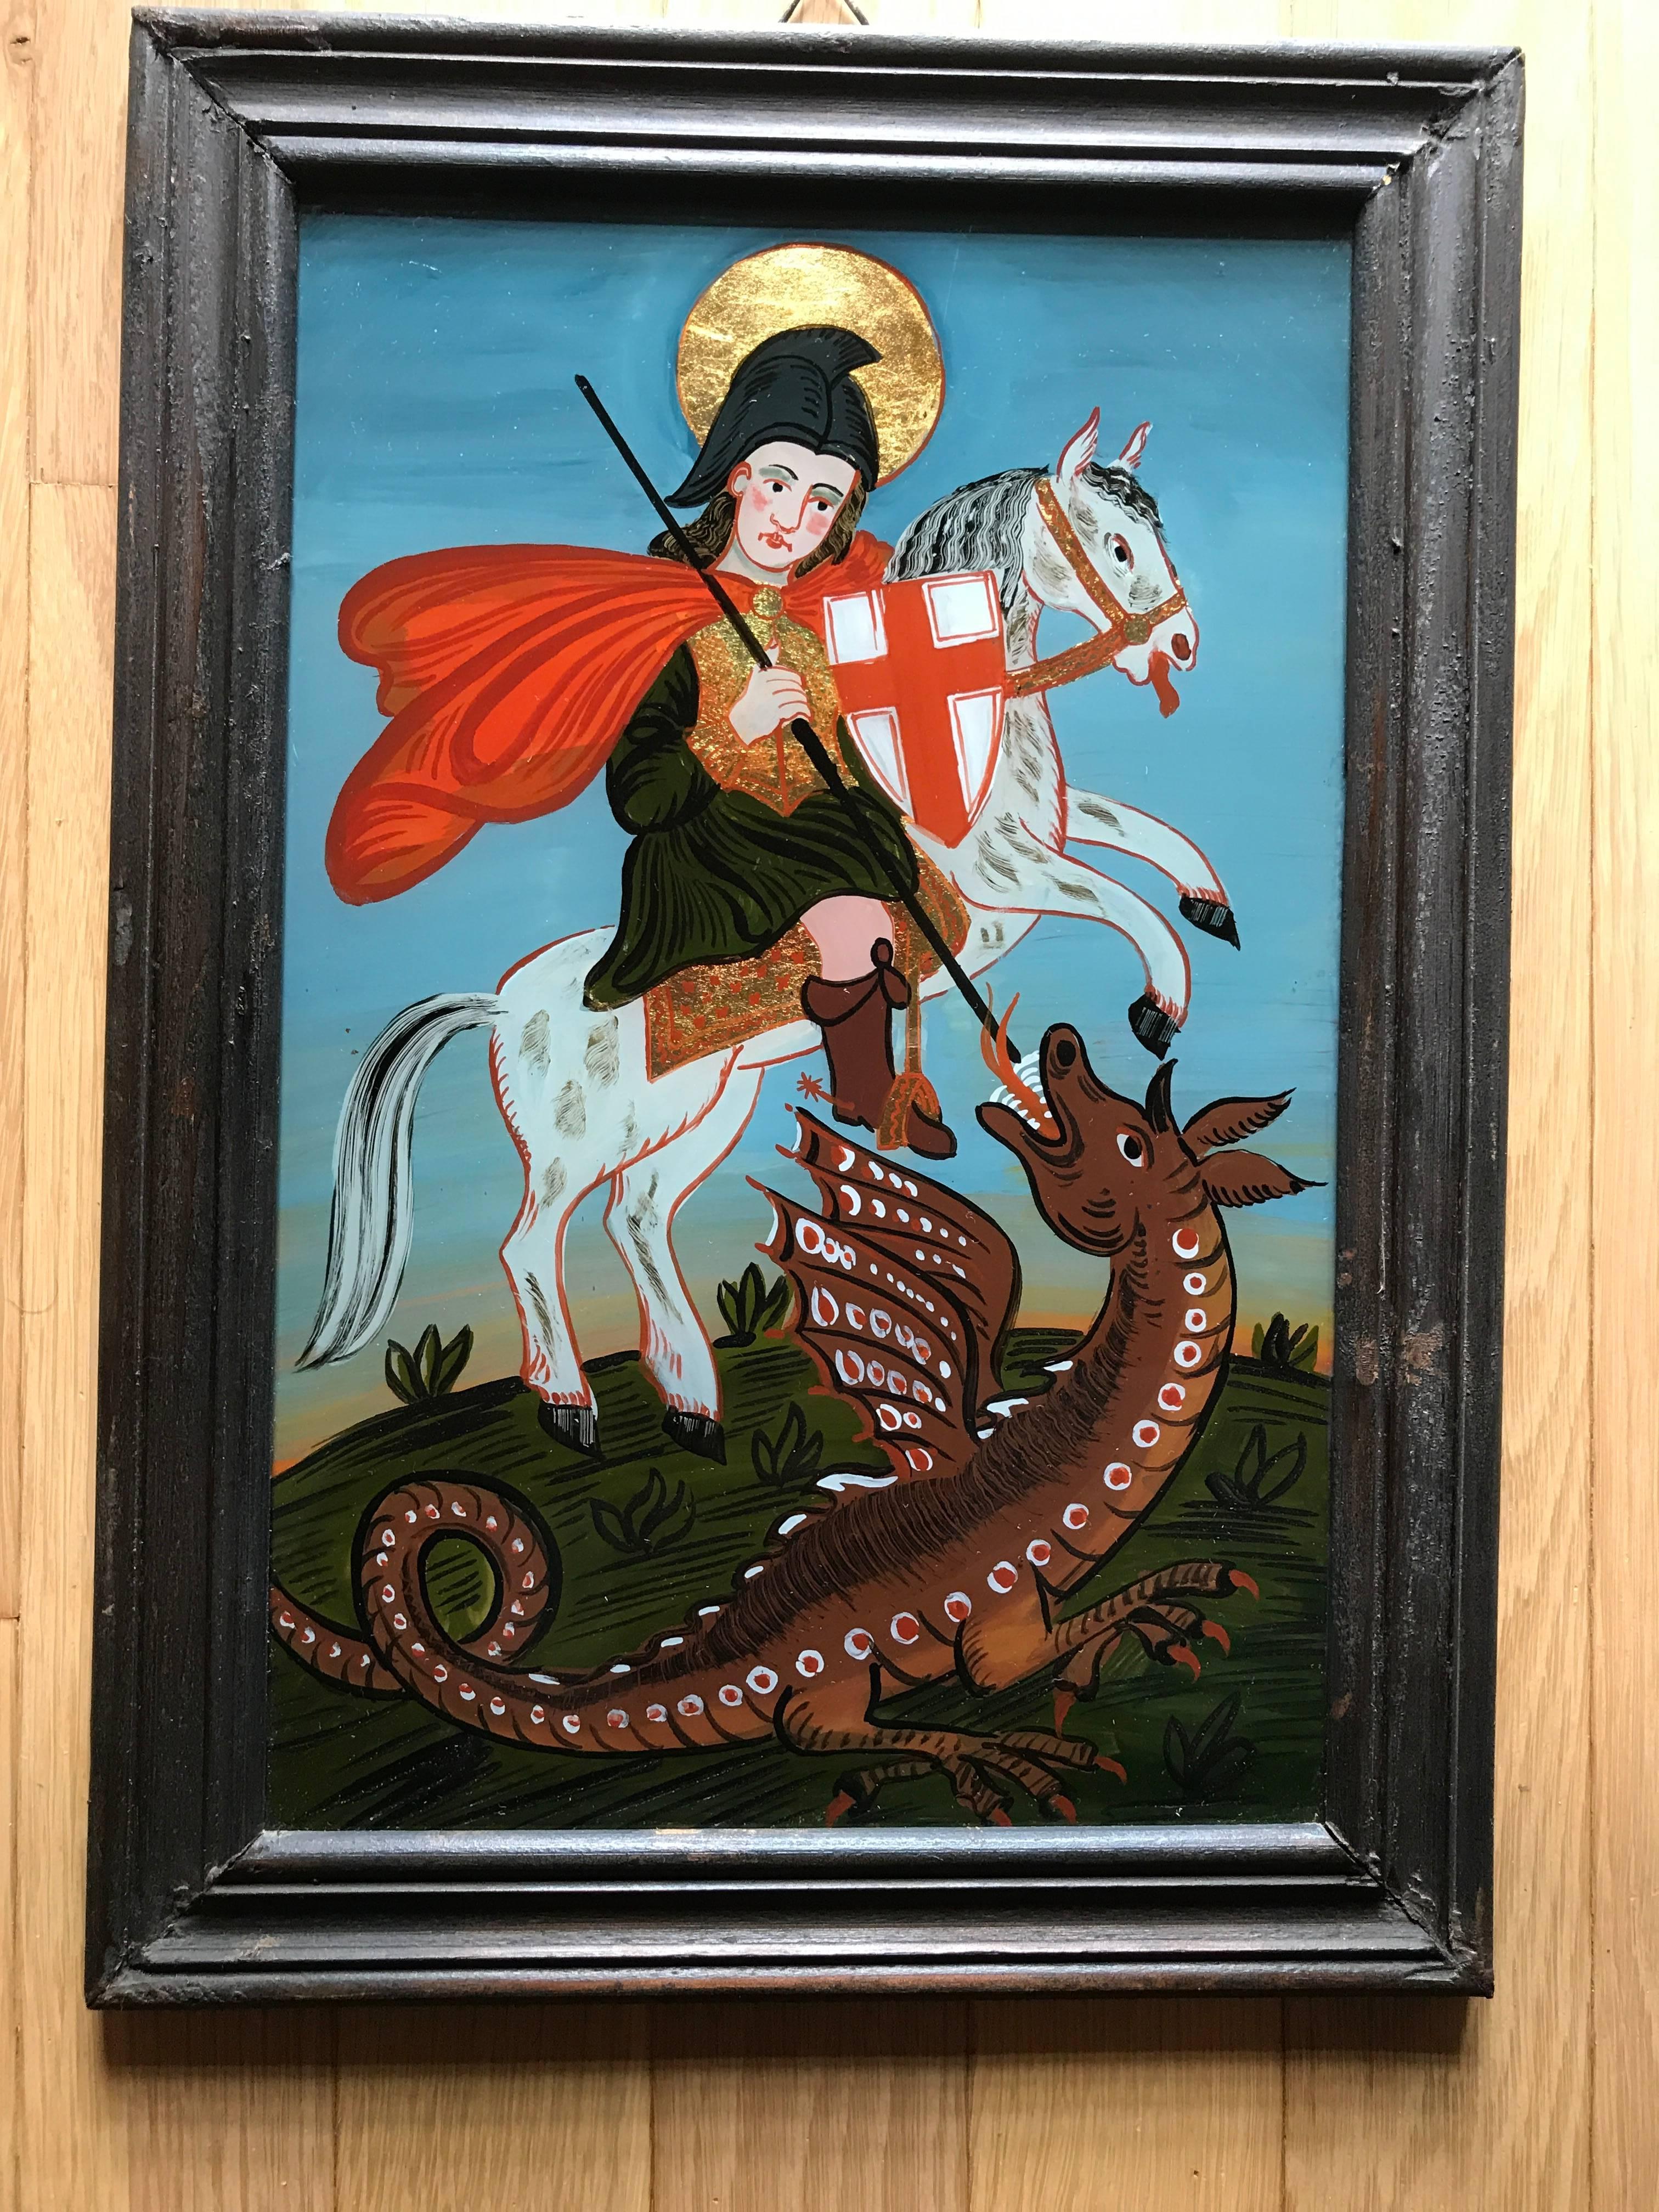 Verre églomisé, oder Hinterglasmalerei mit Vergoldung des Heiligen Georg und des Drachen. Der heilige Georg reitet auf seinem Pferd und erschlägt den Drachen mit seinem Speer. In einem zeitgenössischen schwarz lackierten Rahmen. Das Schöne an der